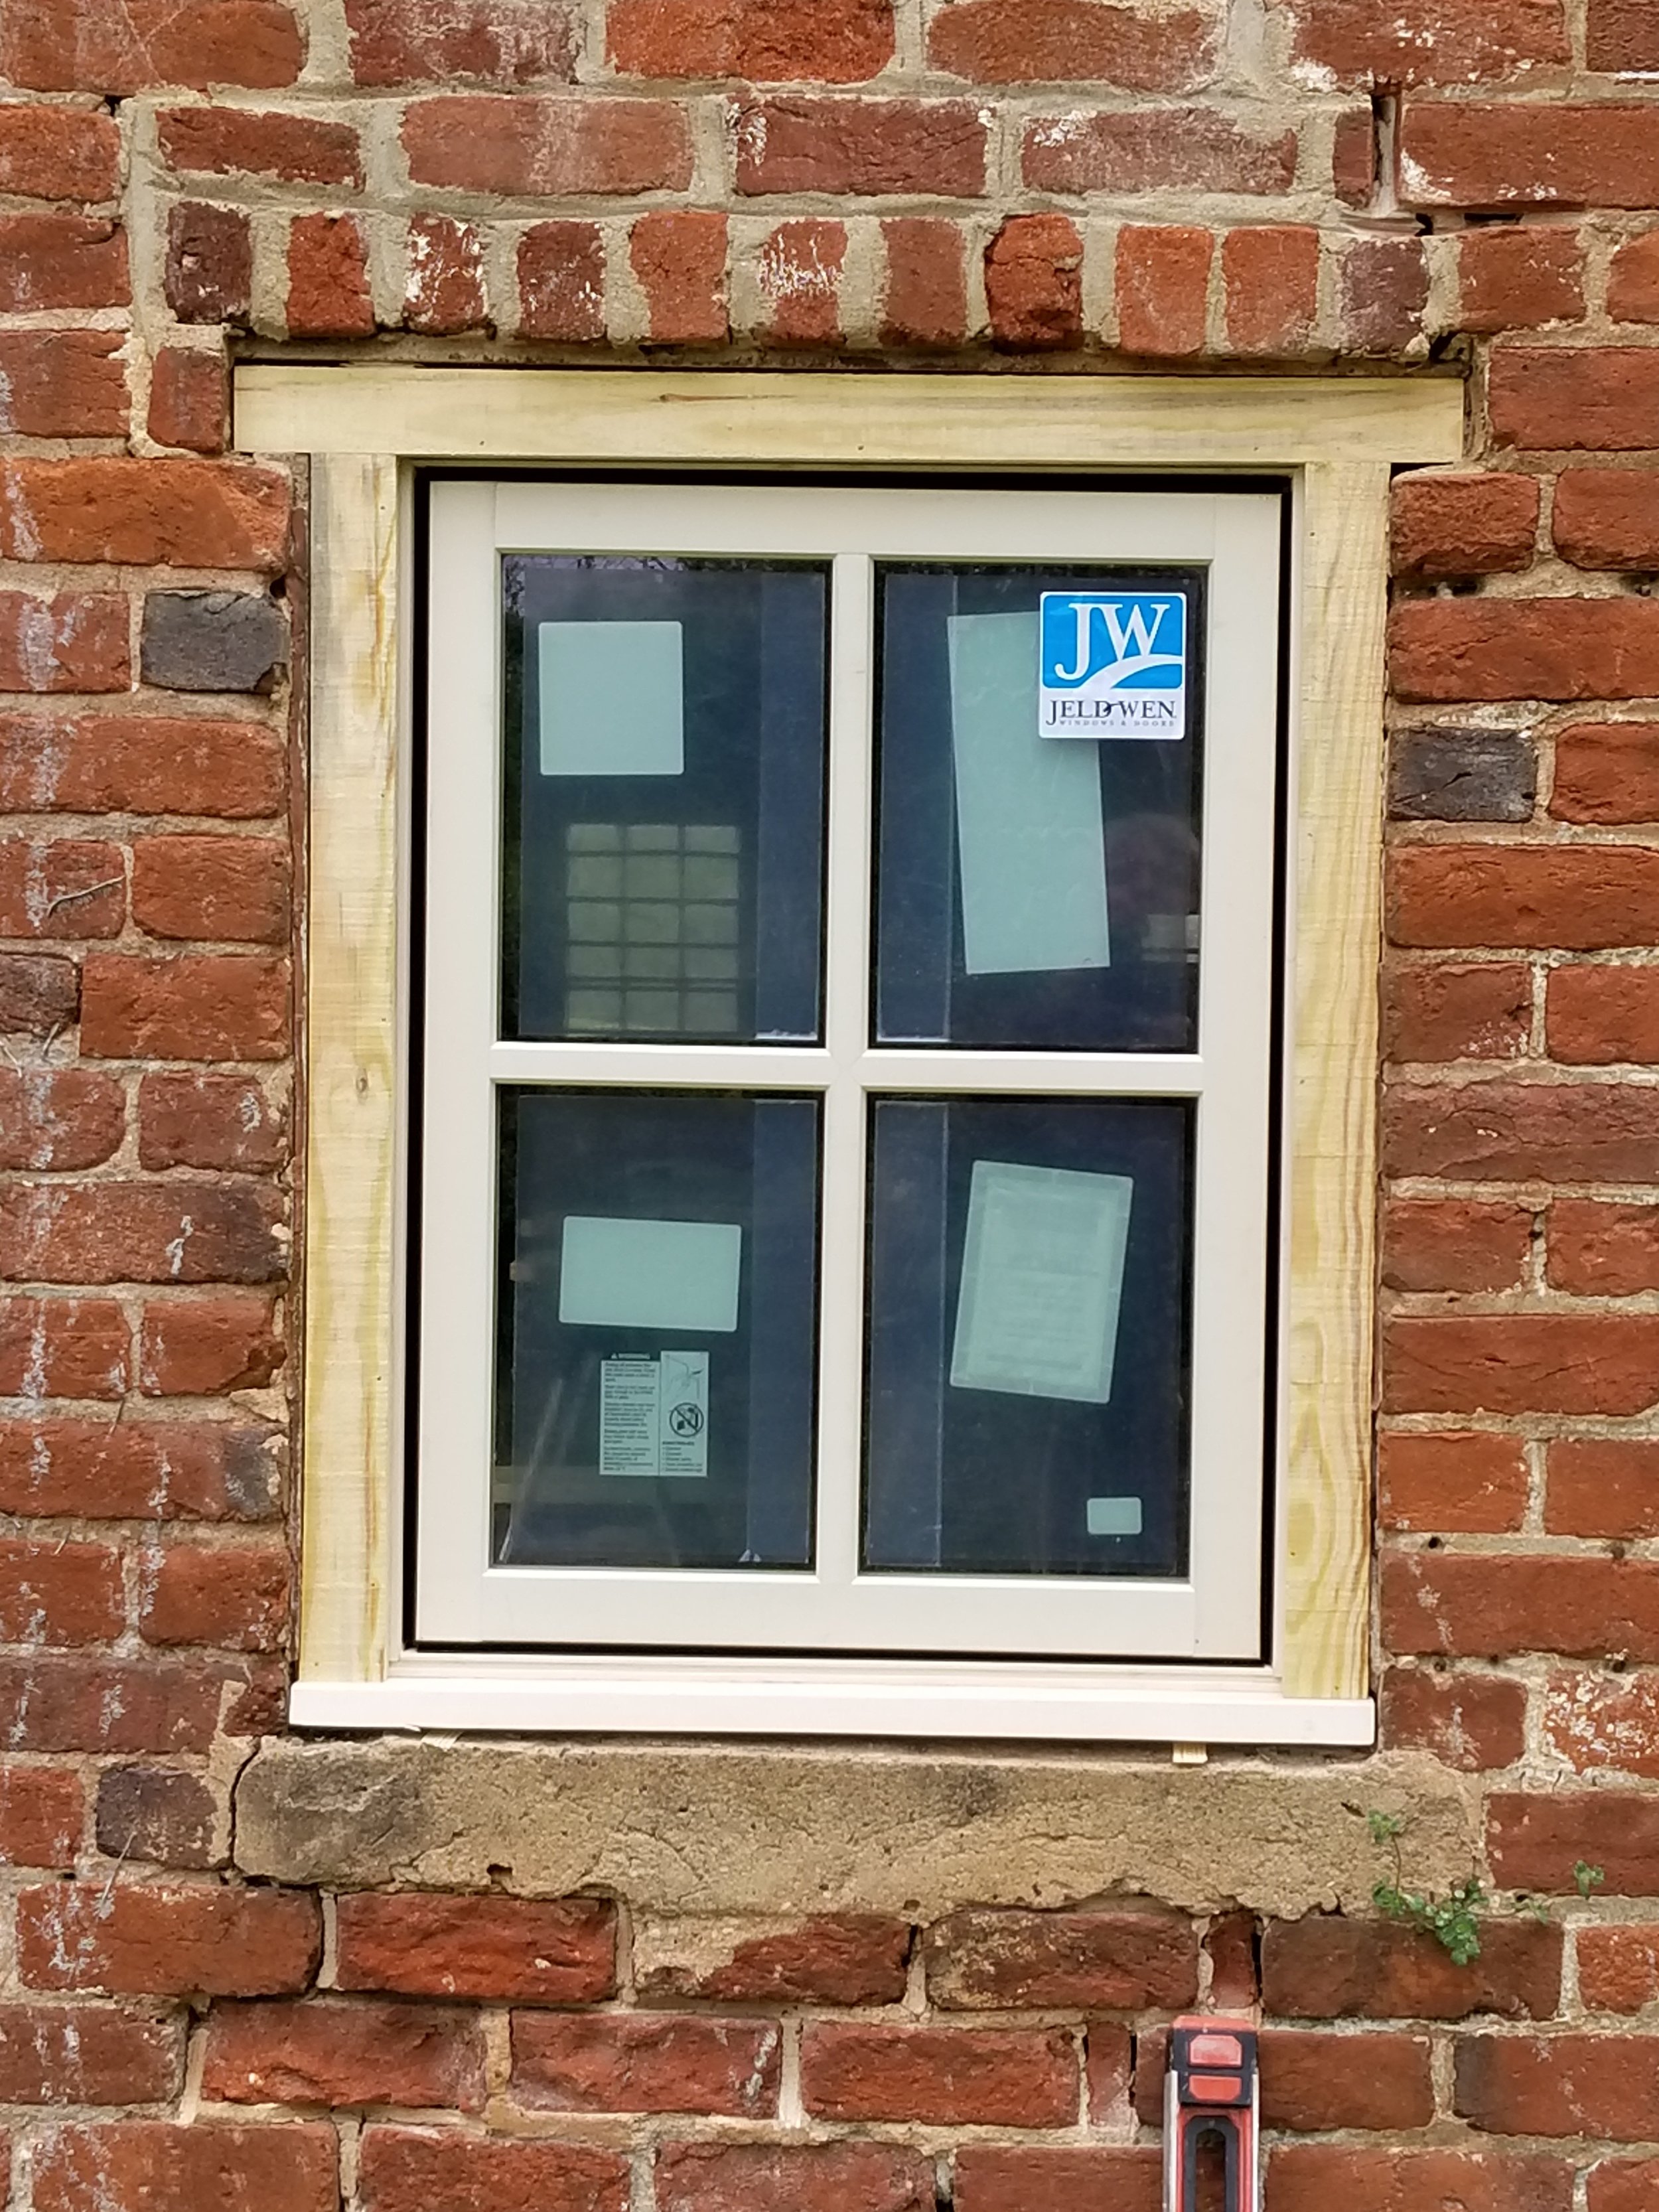 New windows!